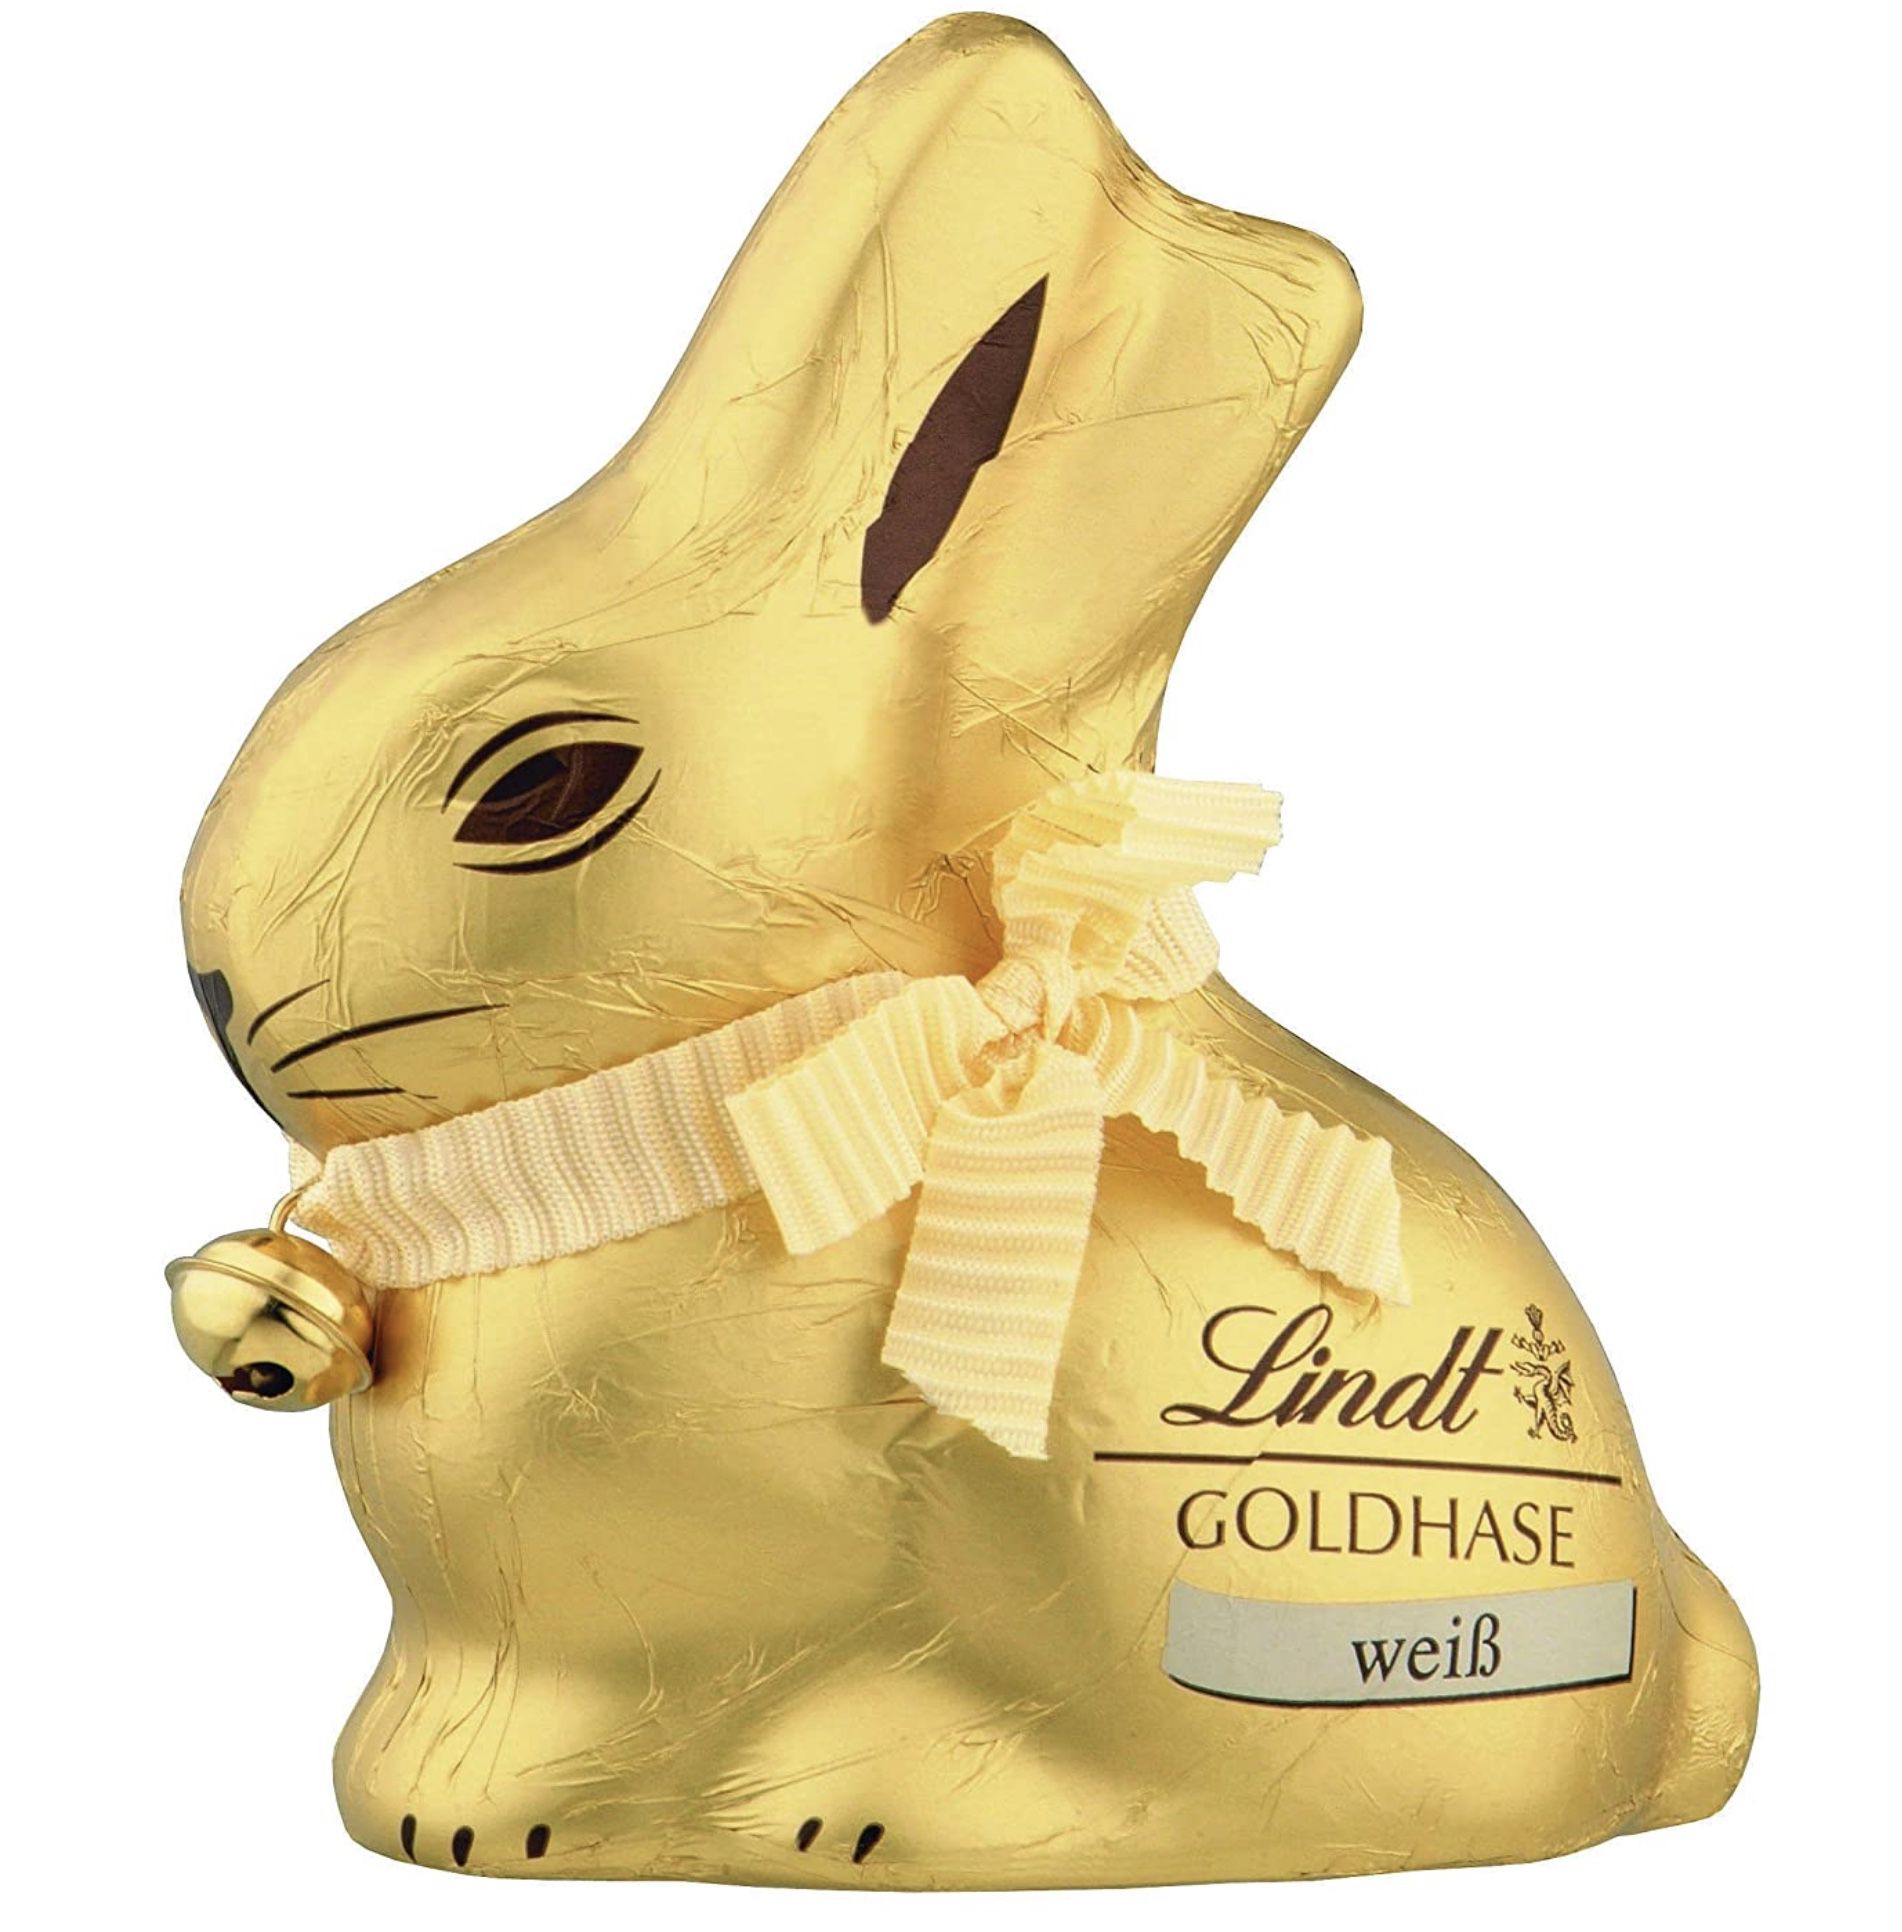 4x Lindt Goldhase Premium Weiße Schokolade je 100g für 10,79€ (statt 14€)   Prime